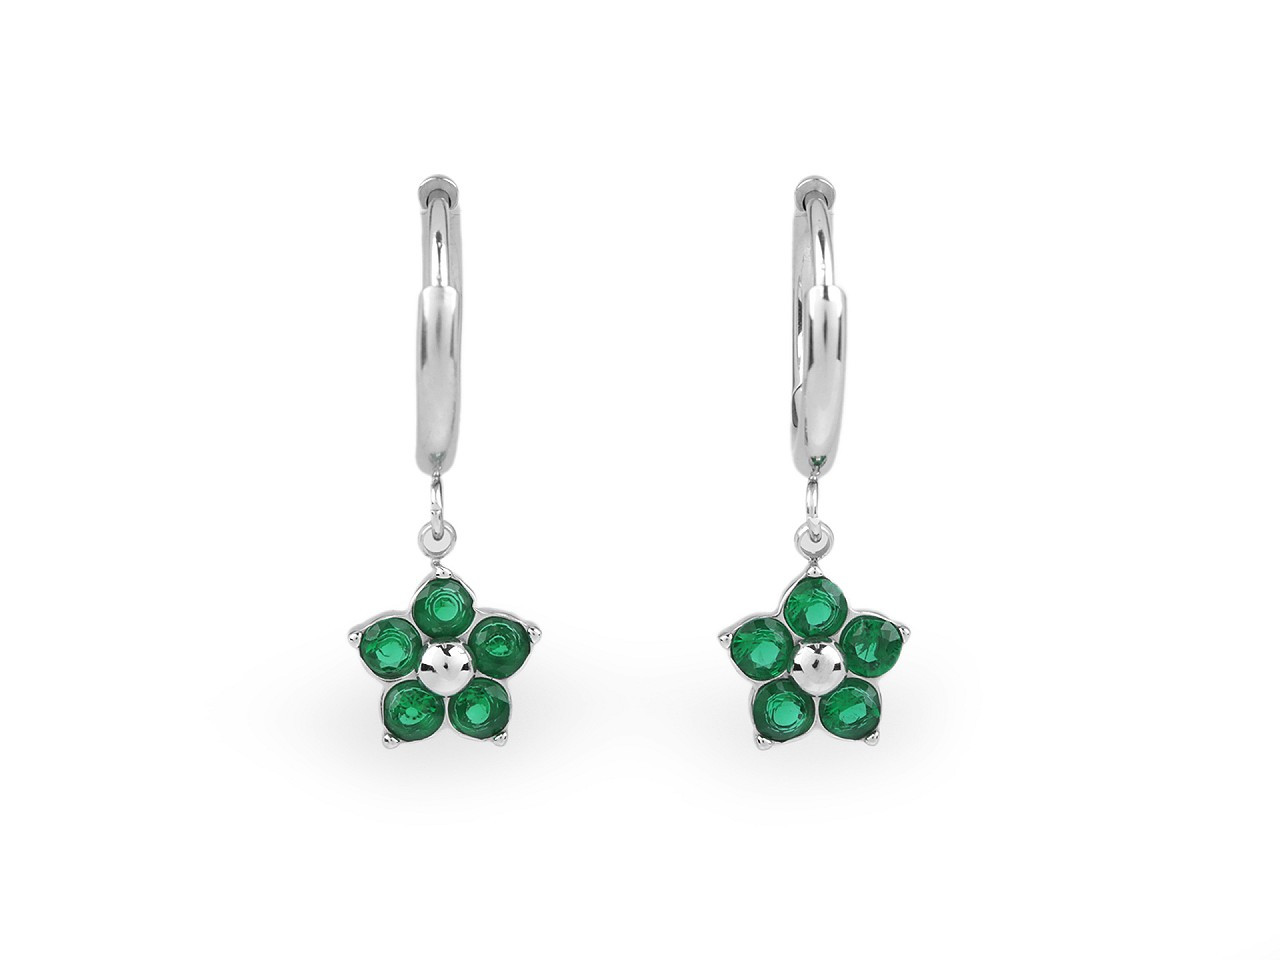 Náušnice z nerezové oceli květ s broušenými kamínky, barva 3 emerald